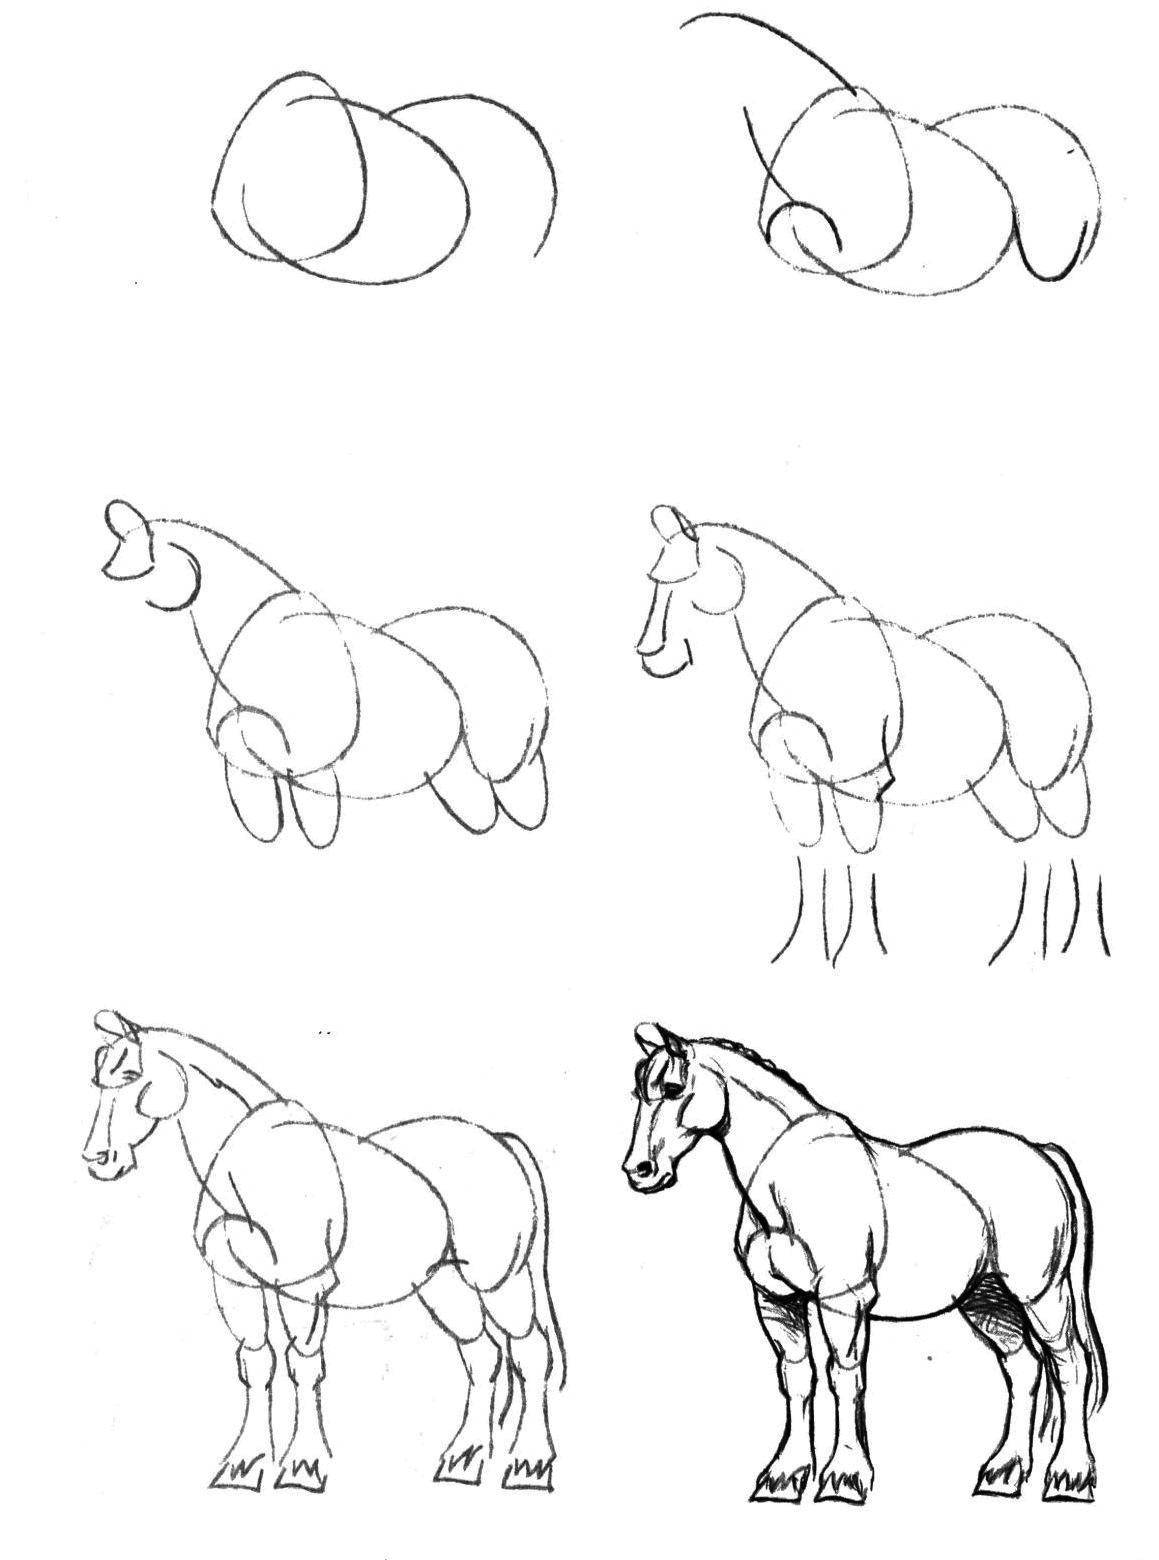 Рисуем пошагово. Рисунок карандашом пошагово. Пошаговое рисование коня. Рисование лошади пошагово. Поэтапные рисунки животных карандашом.